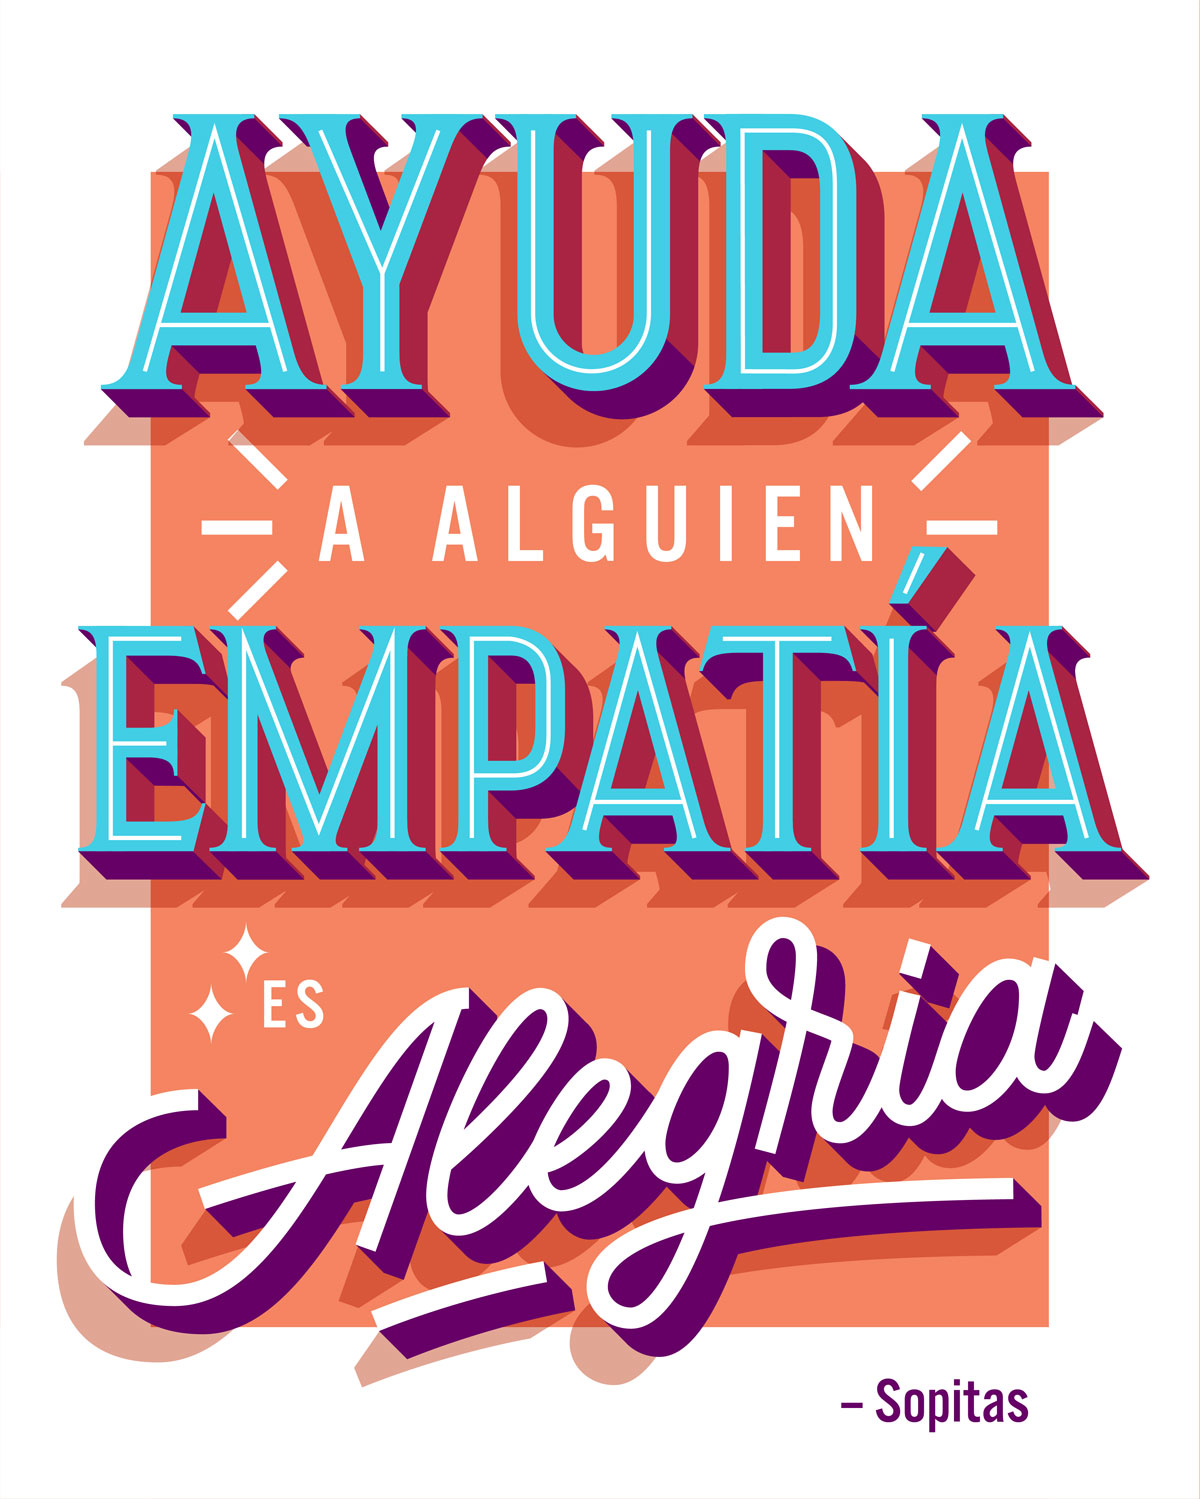 Ayuda a Alguien, empatía es Alegria de Sopitas ilustrado por Rebeca Anaya para Murales con Eco